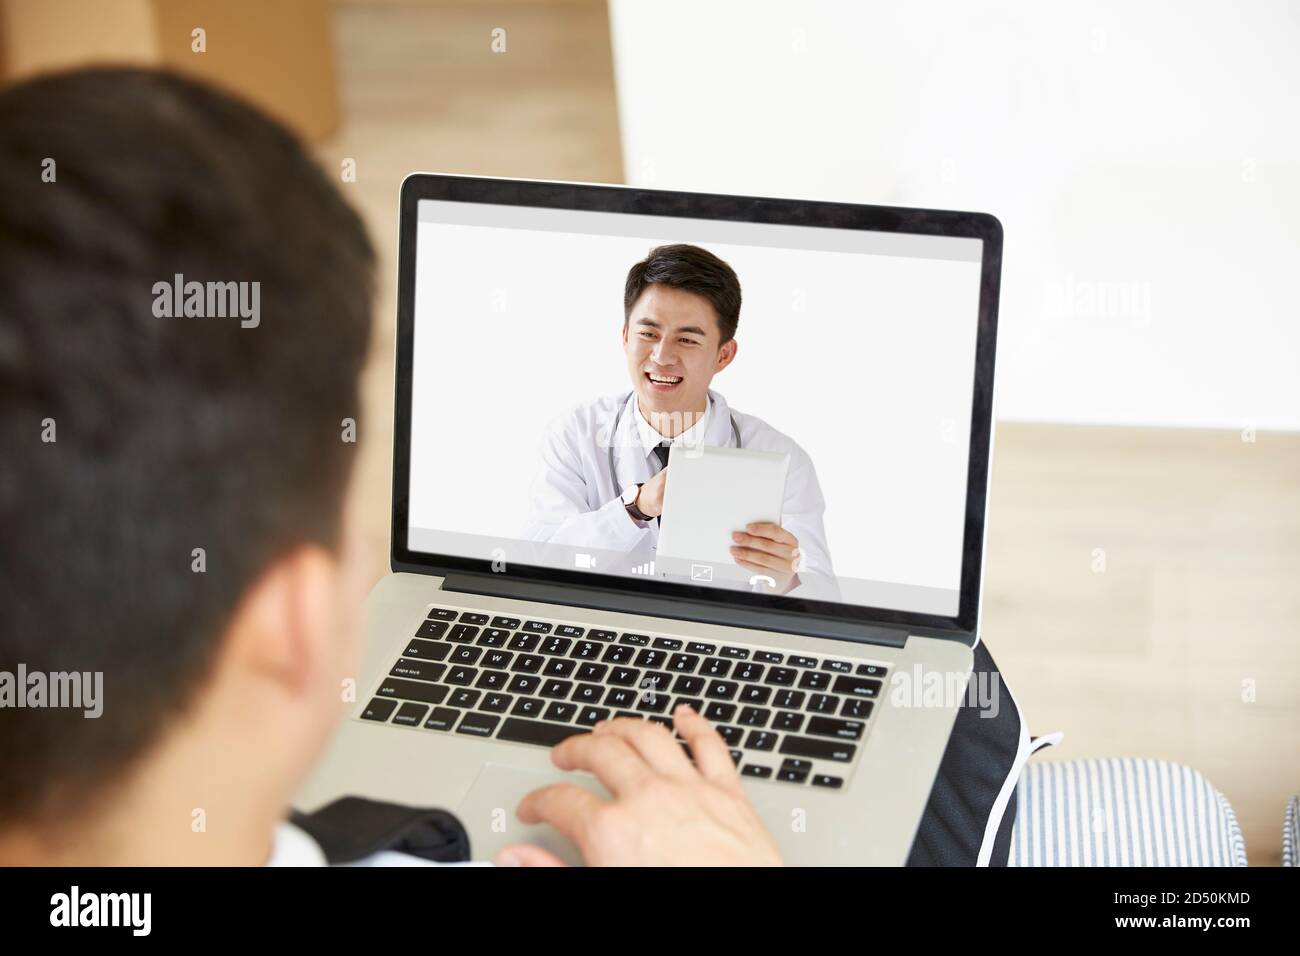 jeune homme asiatique restant à la maison consultant médecin de soins primaires en ligne par chat vidéo à l'aide d'un ordinateur portable Banque D'Images